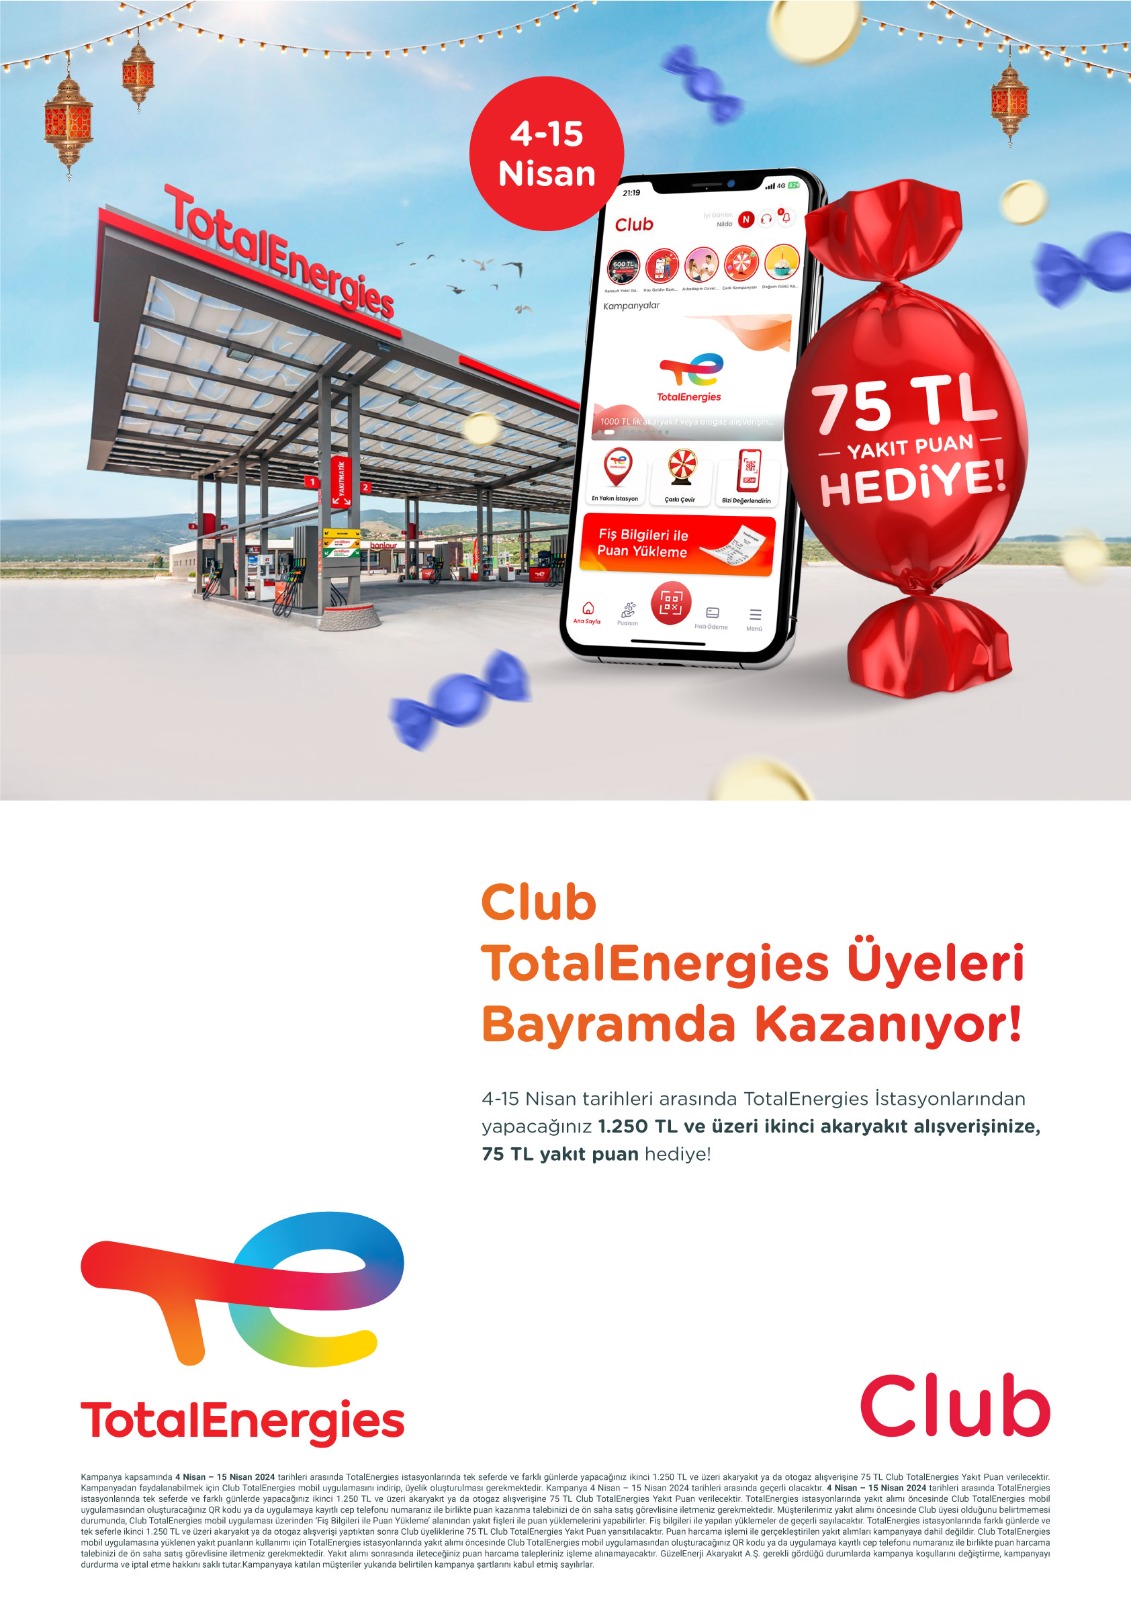 TotalEnergies istasyonlarında Club üyelerine 75 lira yakıt puan hediye